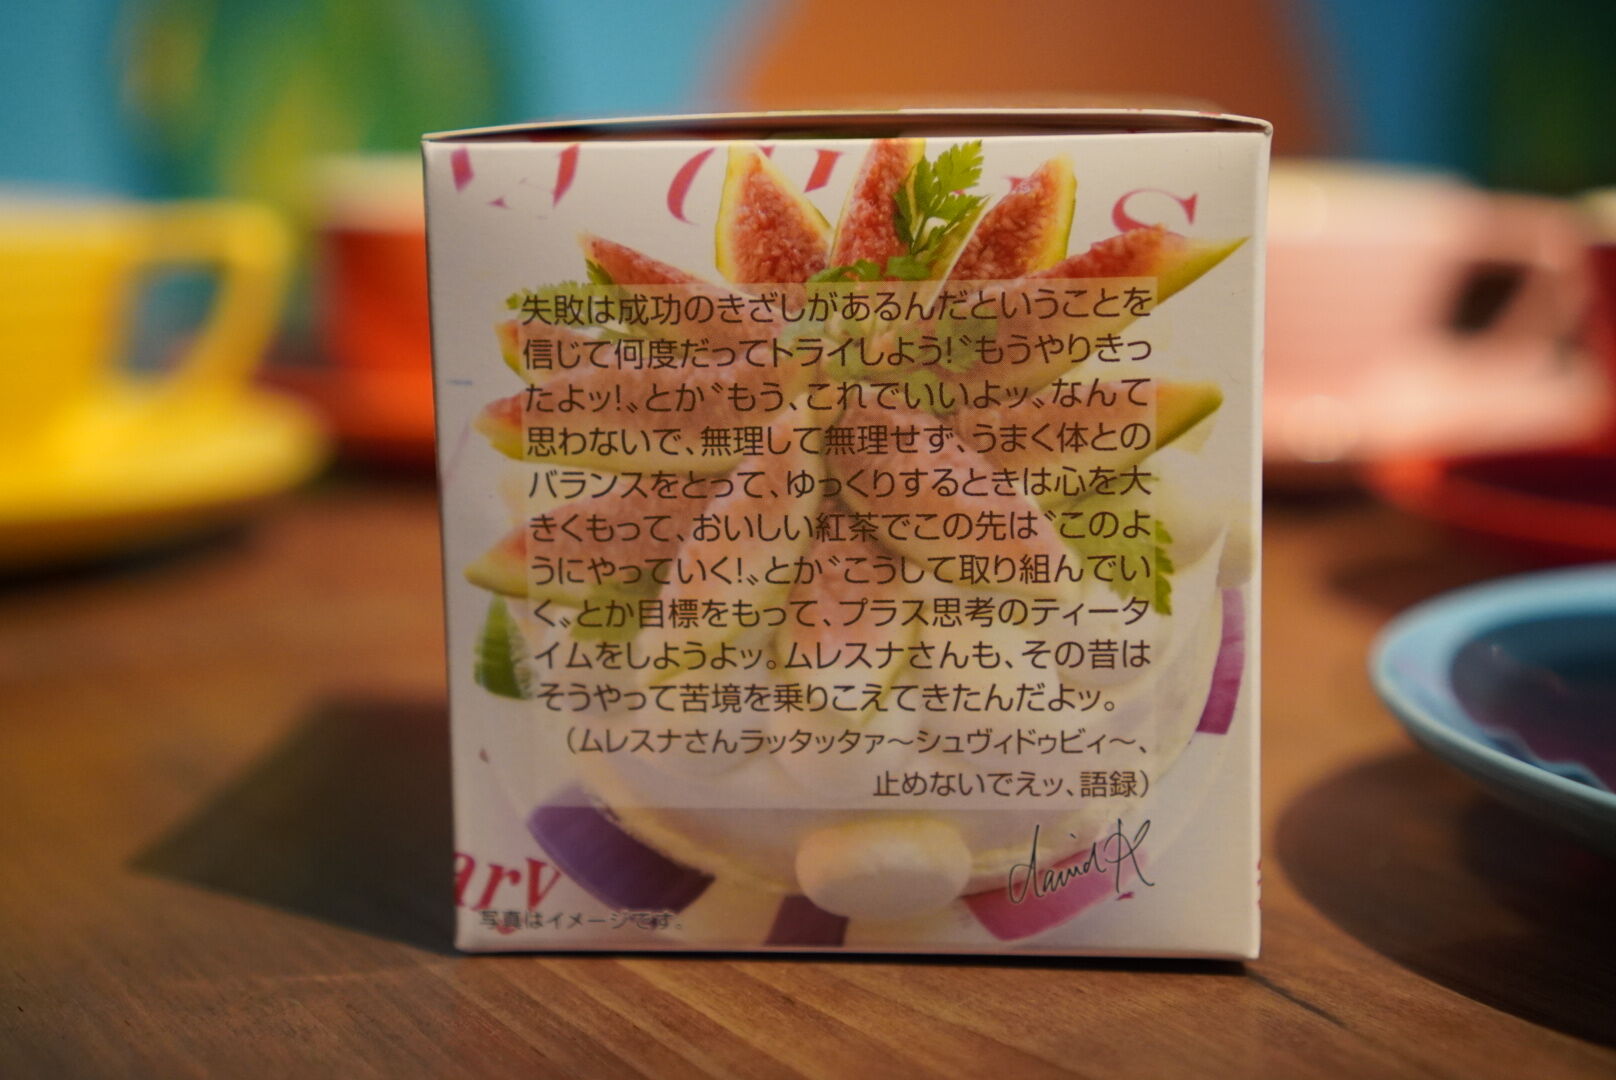 紅茶 ムレスナティー いちじくアールグレイ 120%ガンバレ!!の紅茶